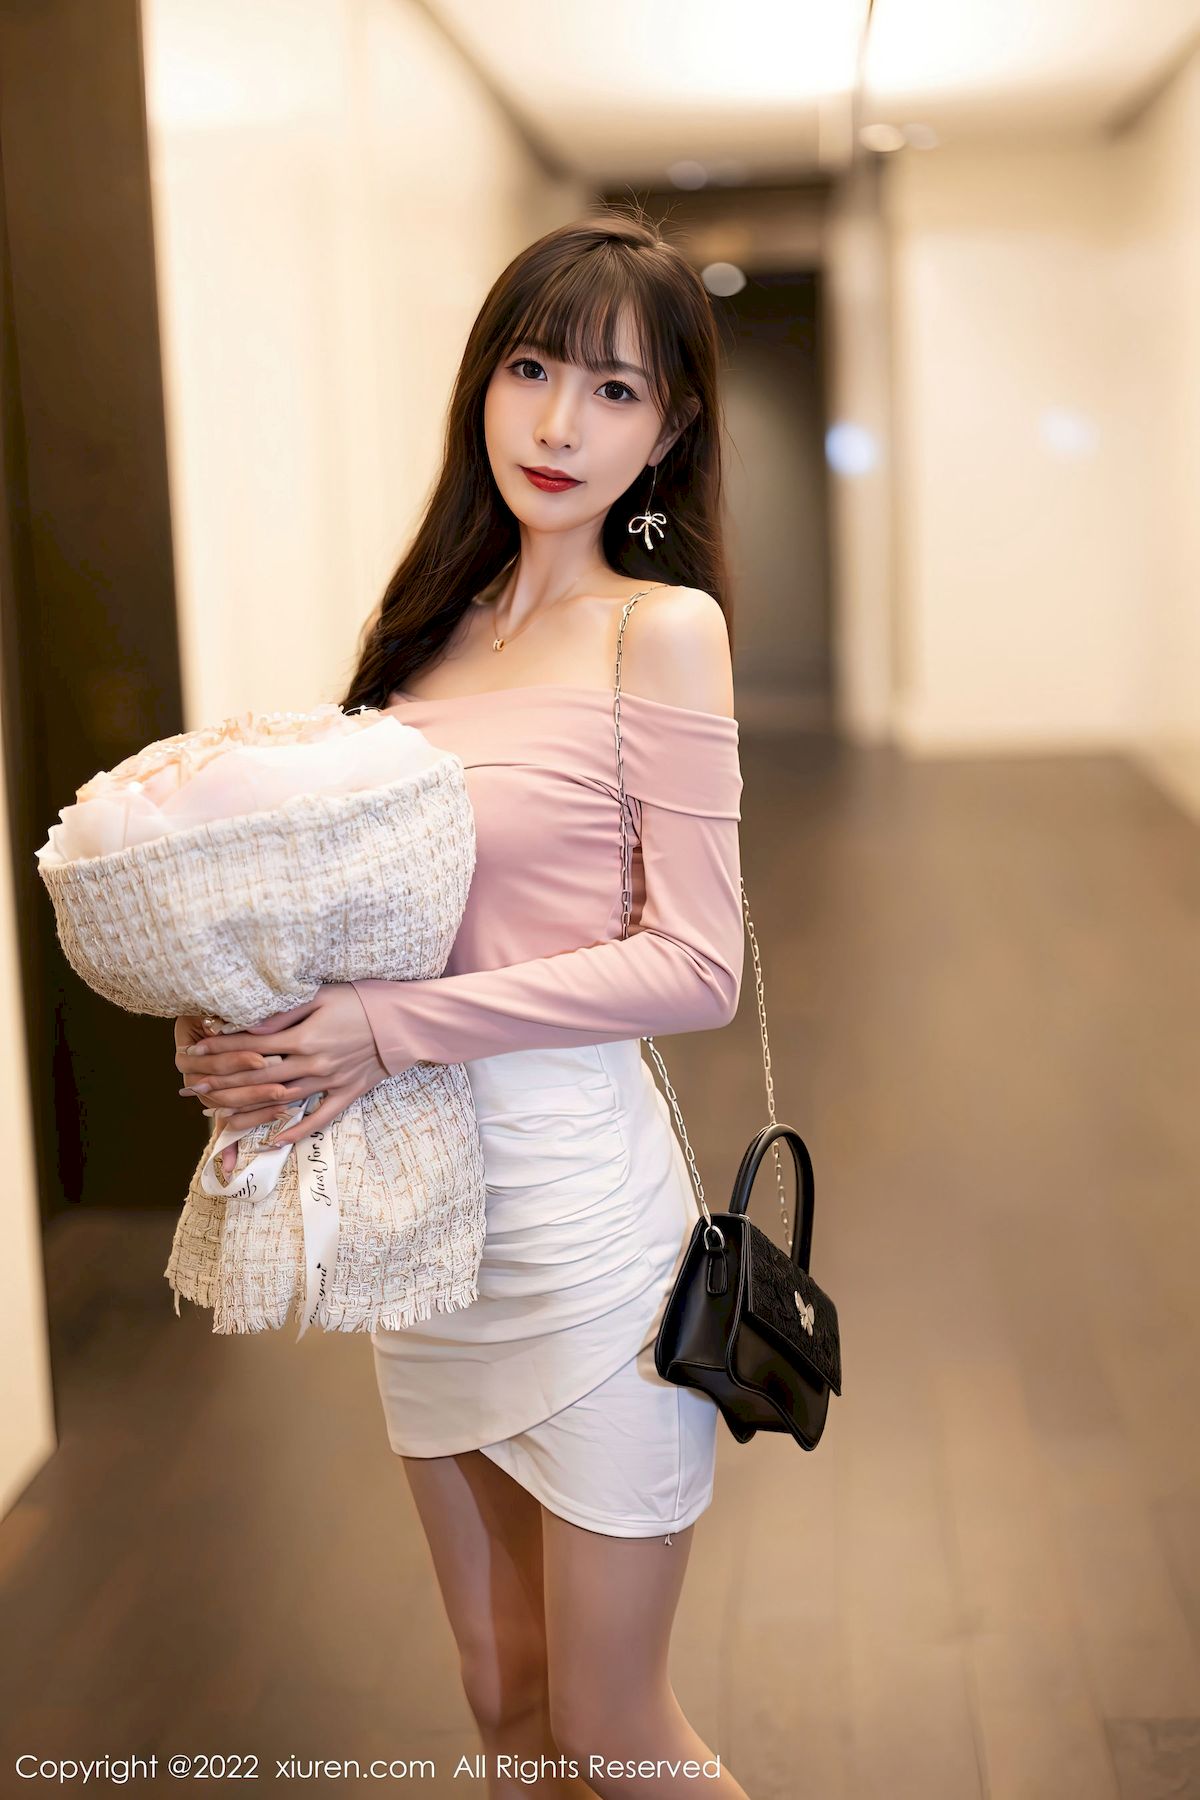 林星阑 - 浅紫色上衣+白色短裙性感写真